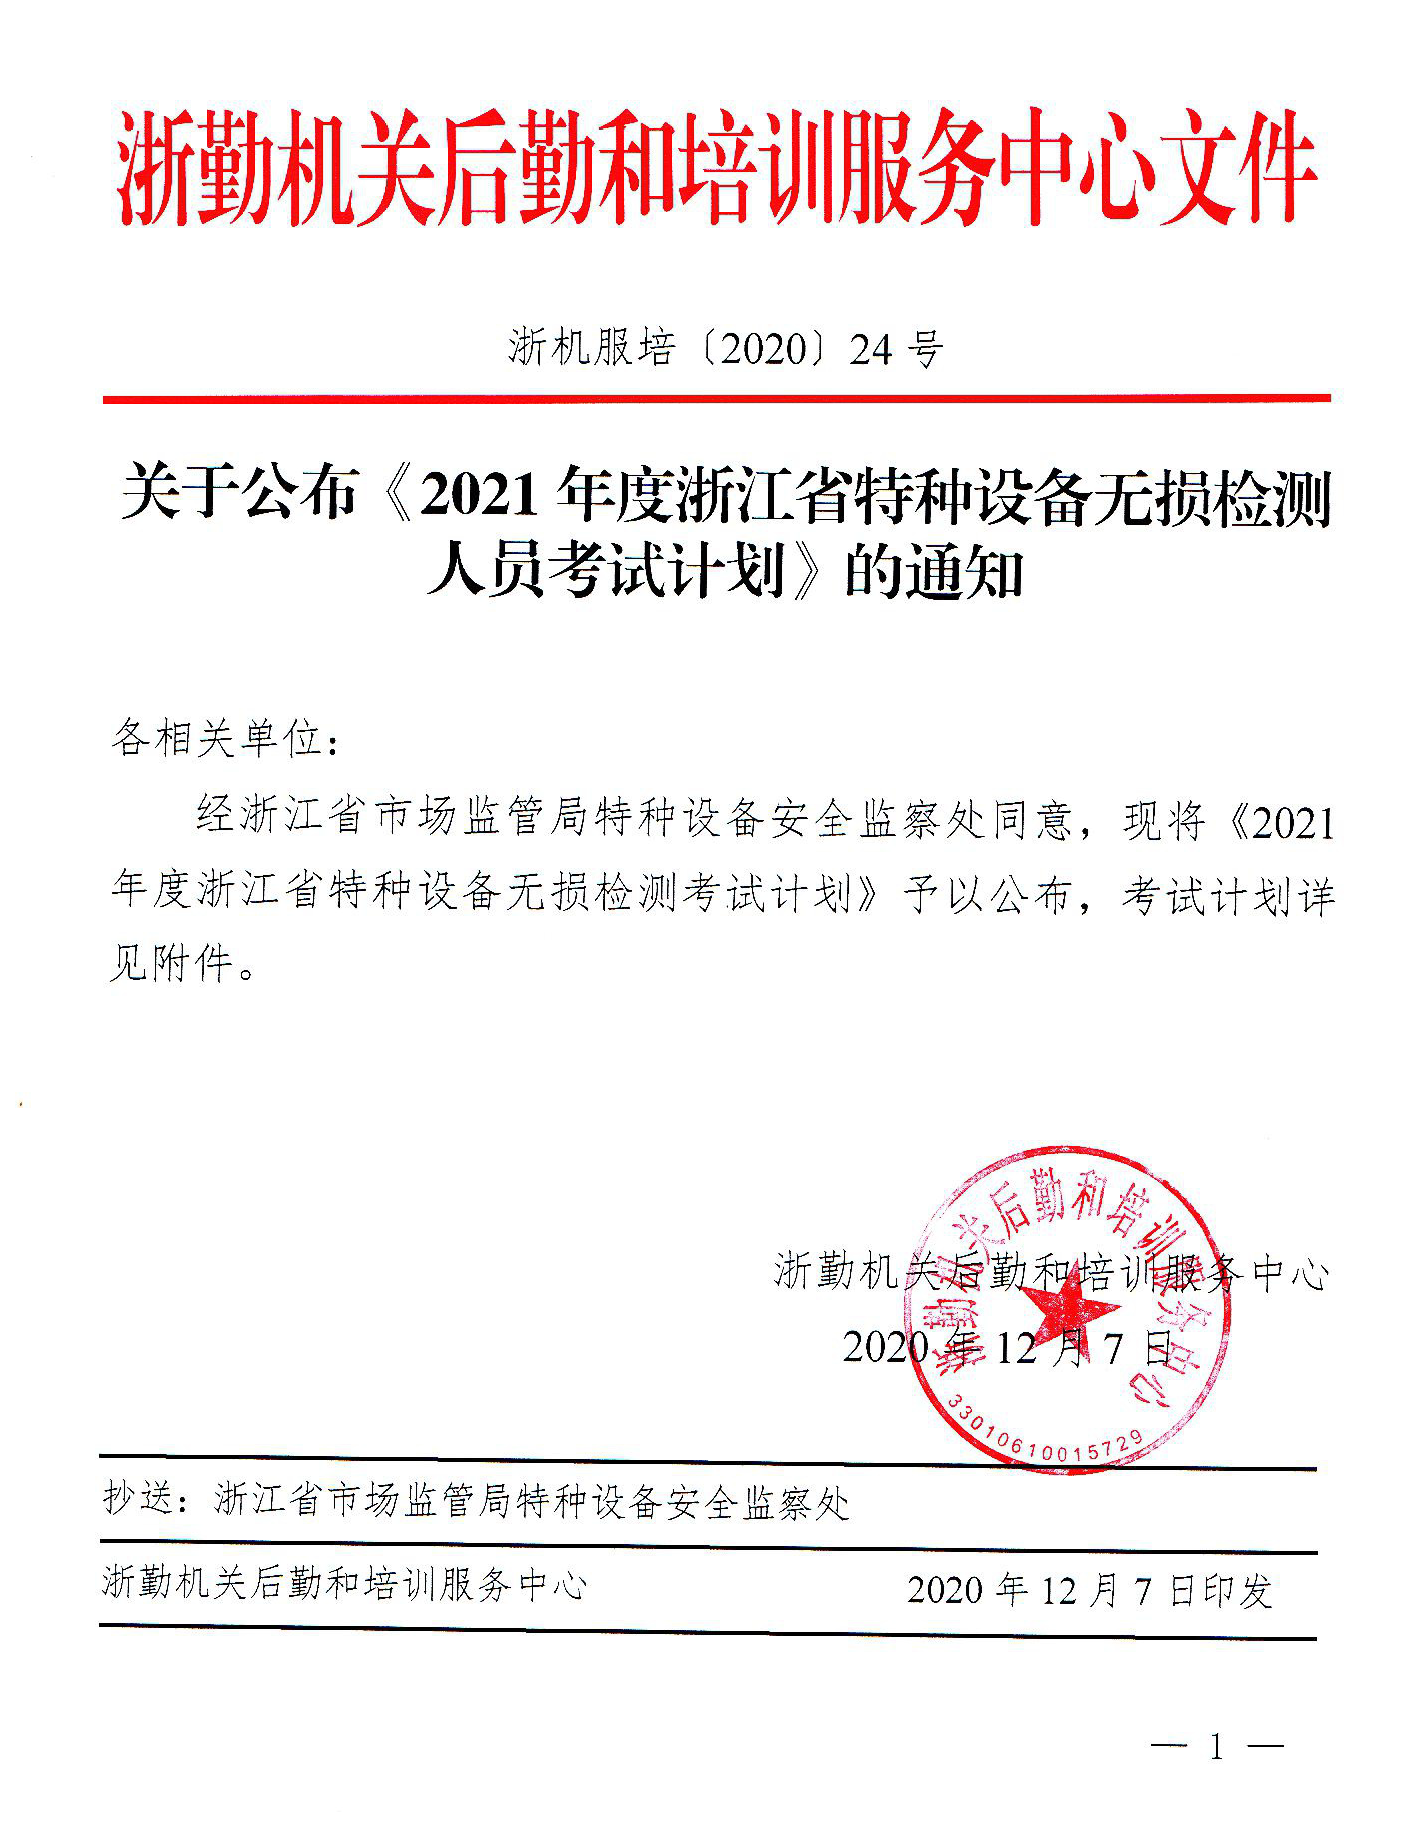 2021年度浙江省特种设备无损检测人员培训考试计划.png